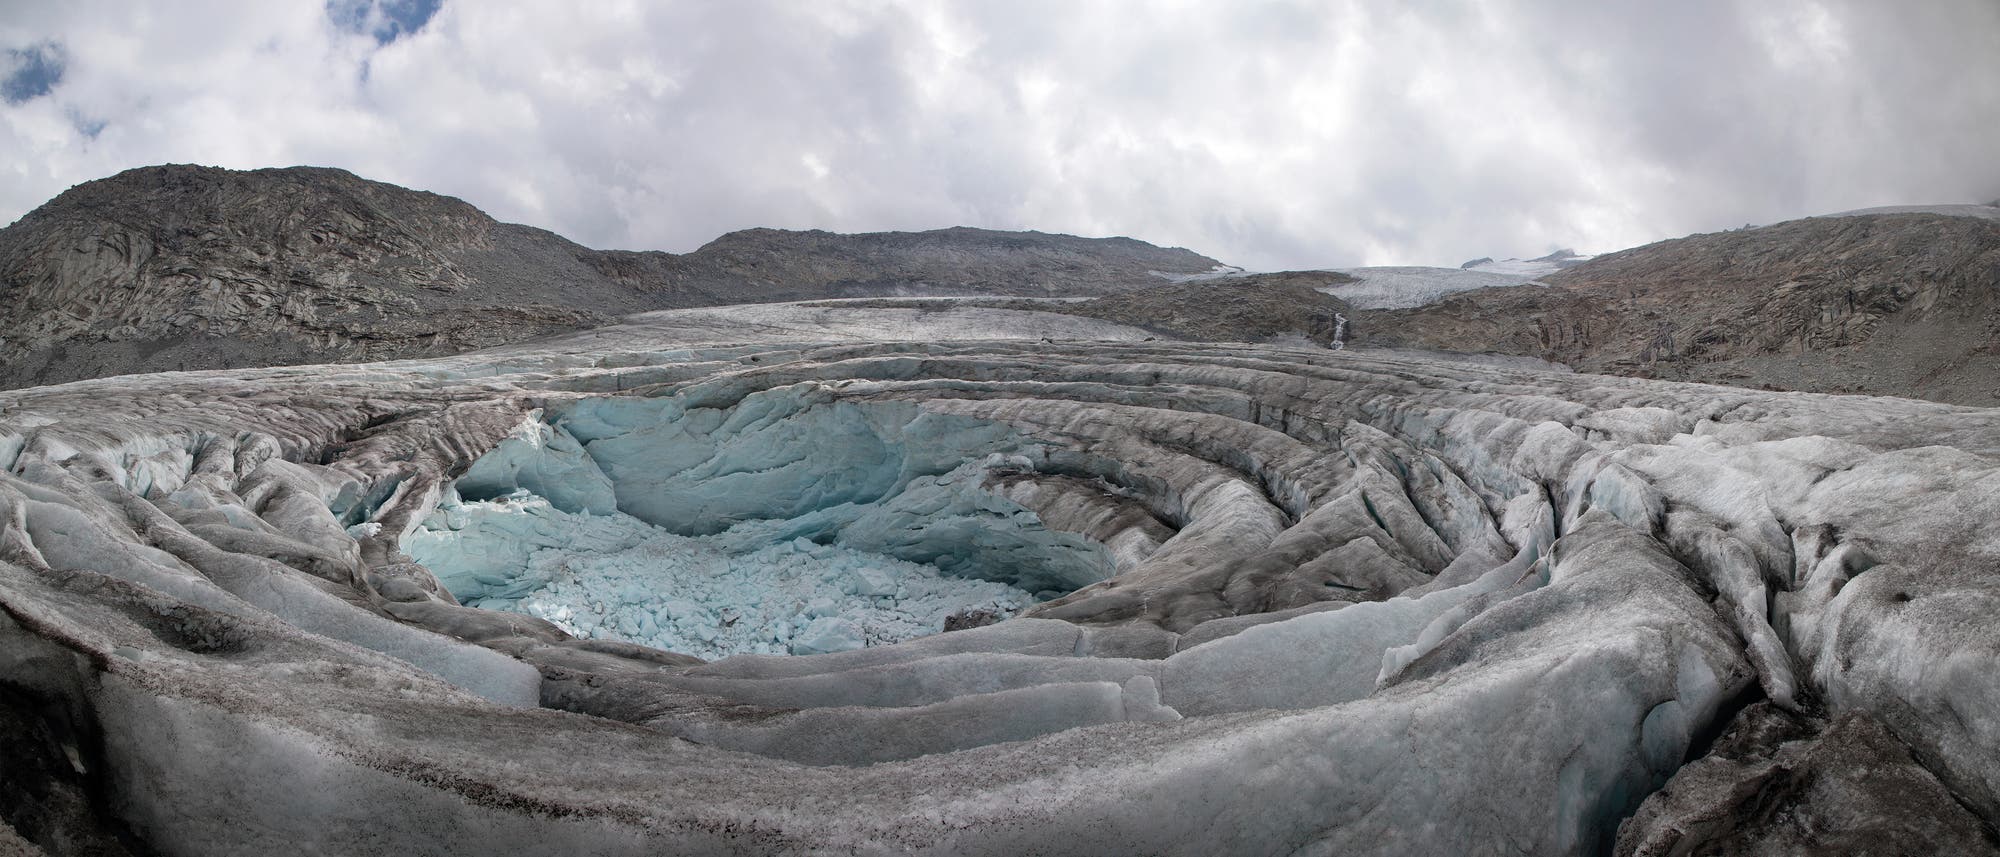 Einer der großen Gletscherkessel, die sich in den letzten Jahren im unteren Bereich des Lares-Gletschers in der Adamello-Presanella-Gruppe gebildet haben.